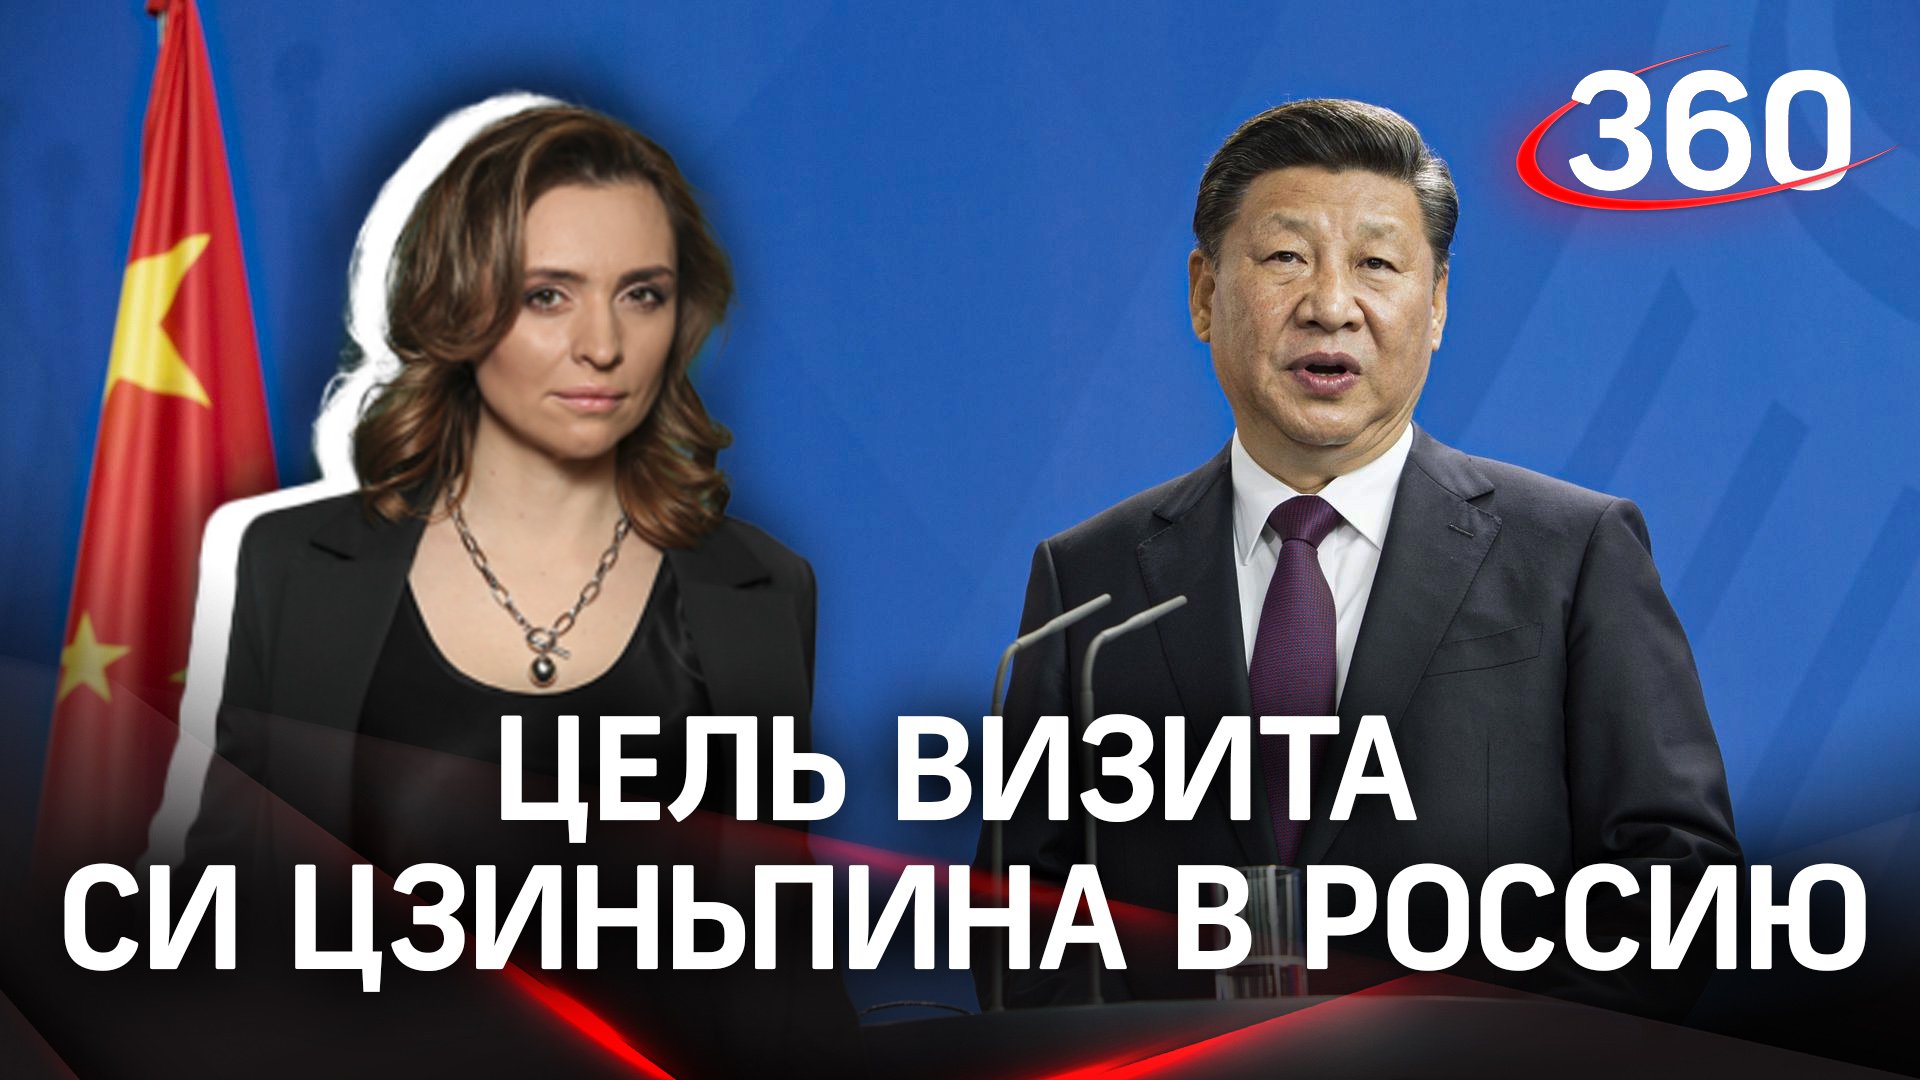 Зачем Си Цзиньпин приехал в Россию? Екатерина Малашенко